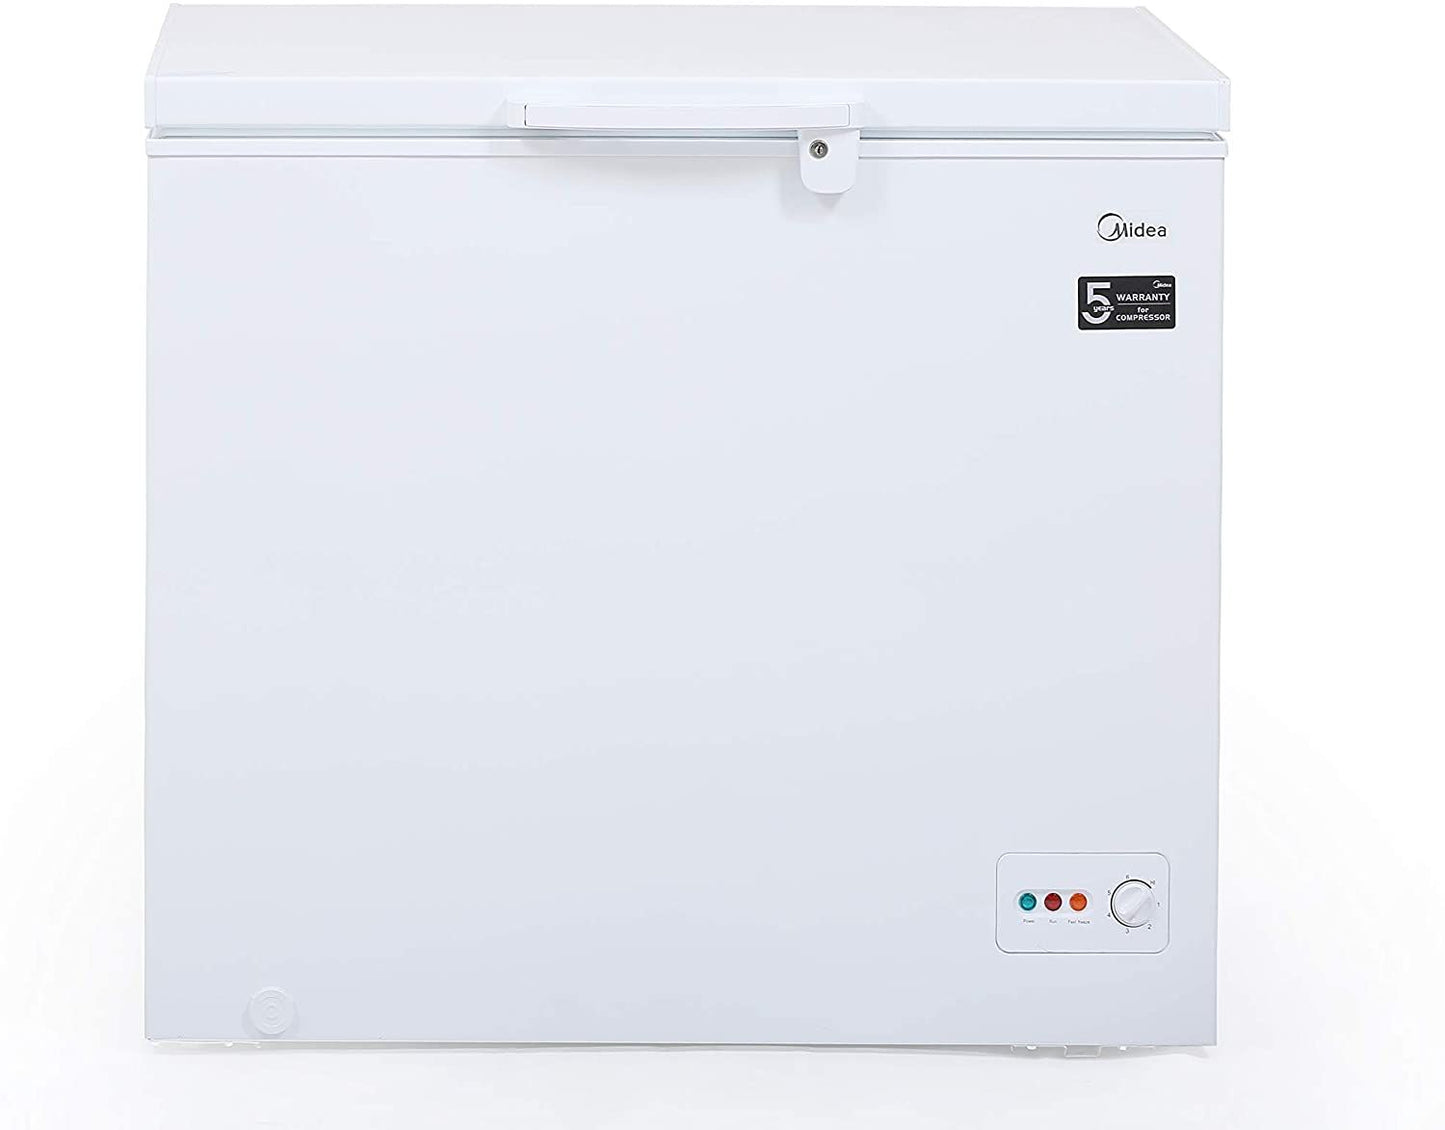 Midea HS324C Chest Freezer White Color 249 Ltr Gross Capacity